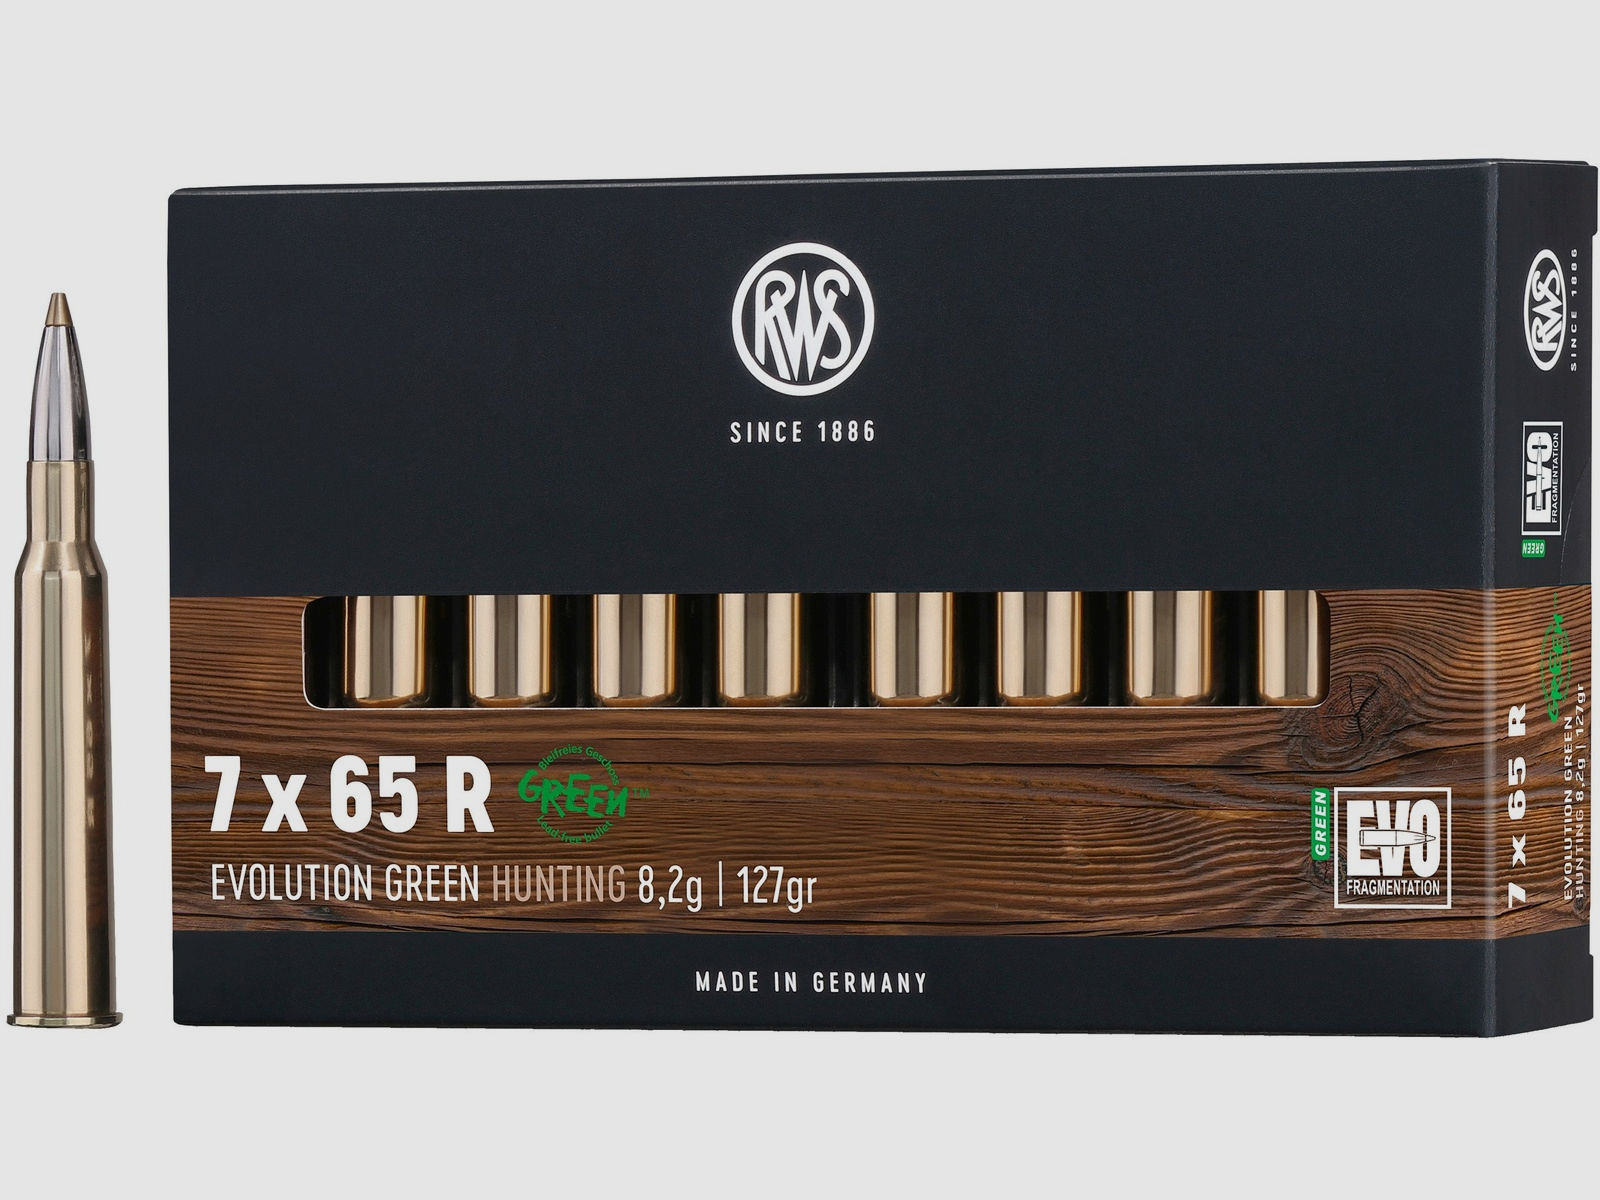 RWS Büchsenpatronen Evolution Green 7x65 R